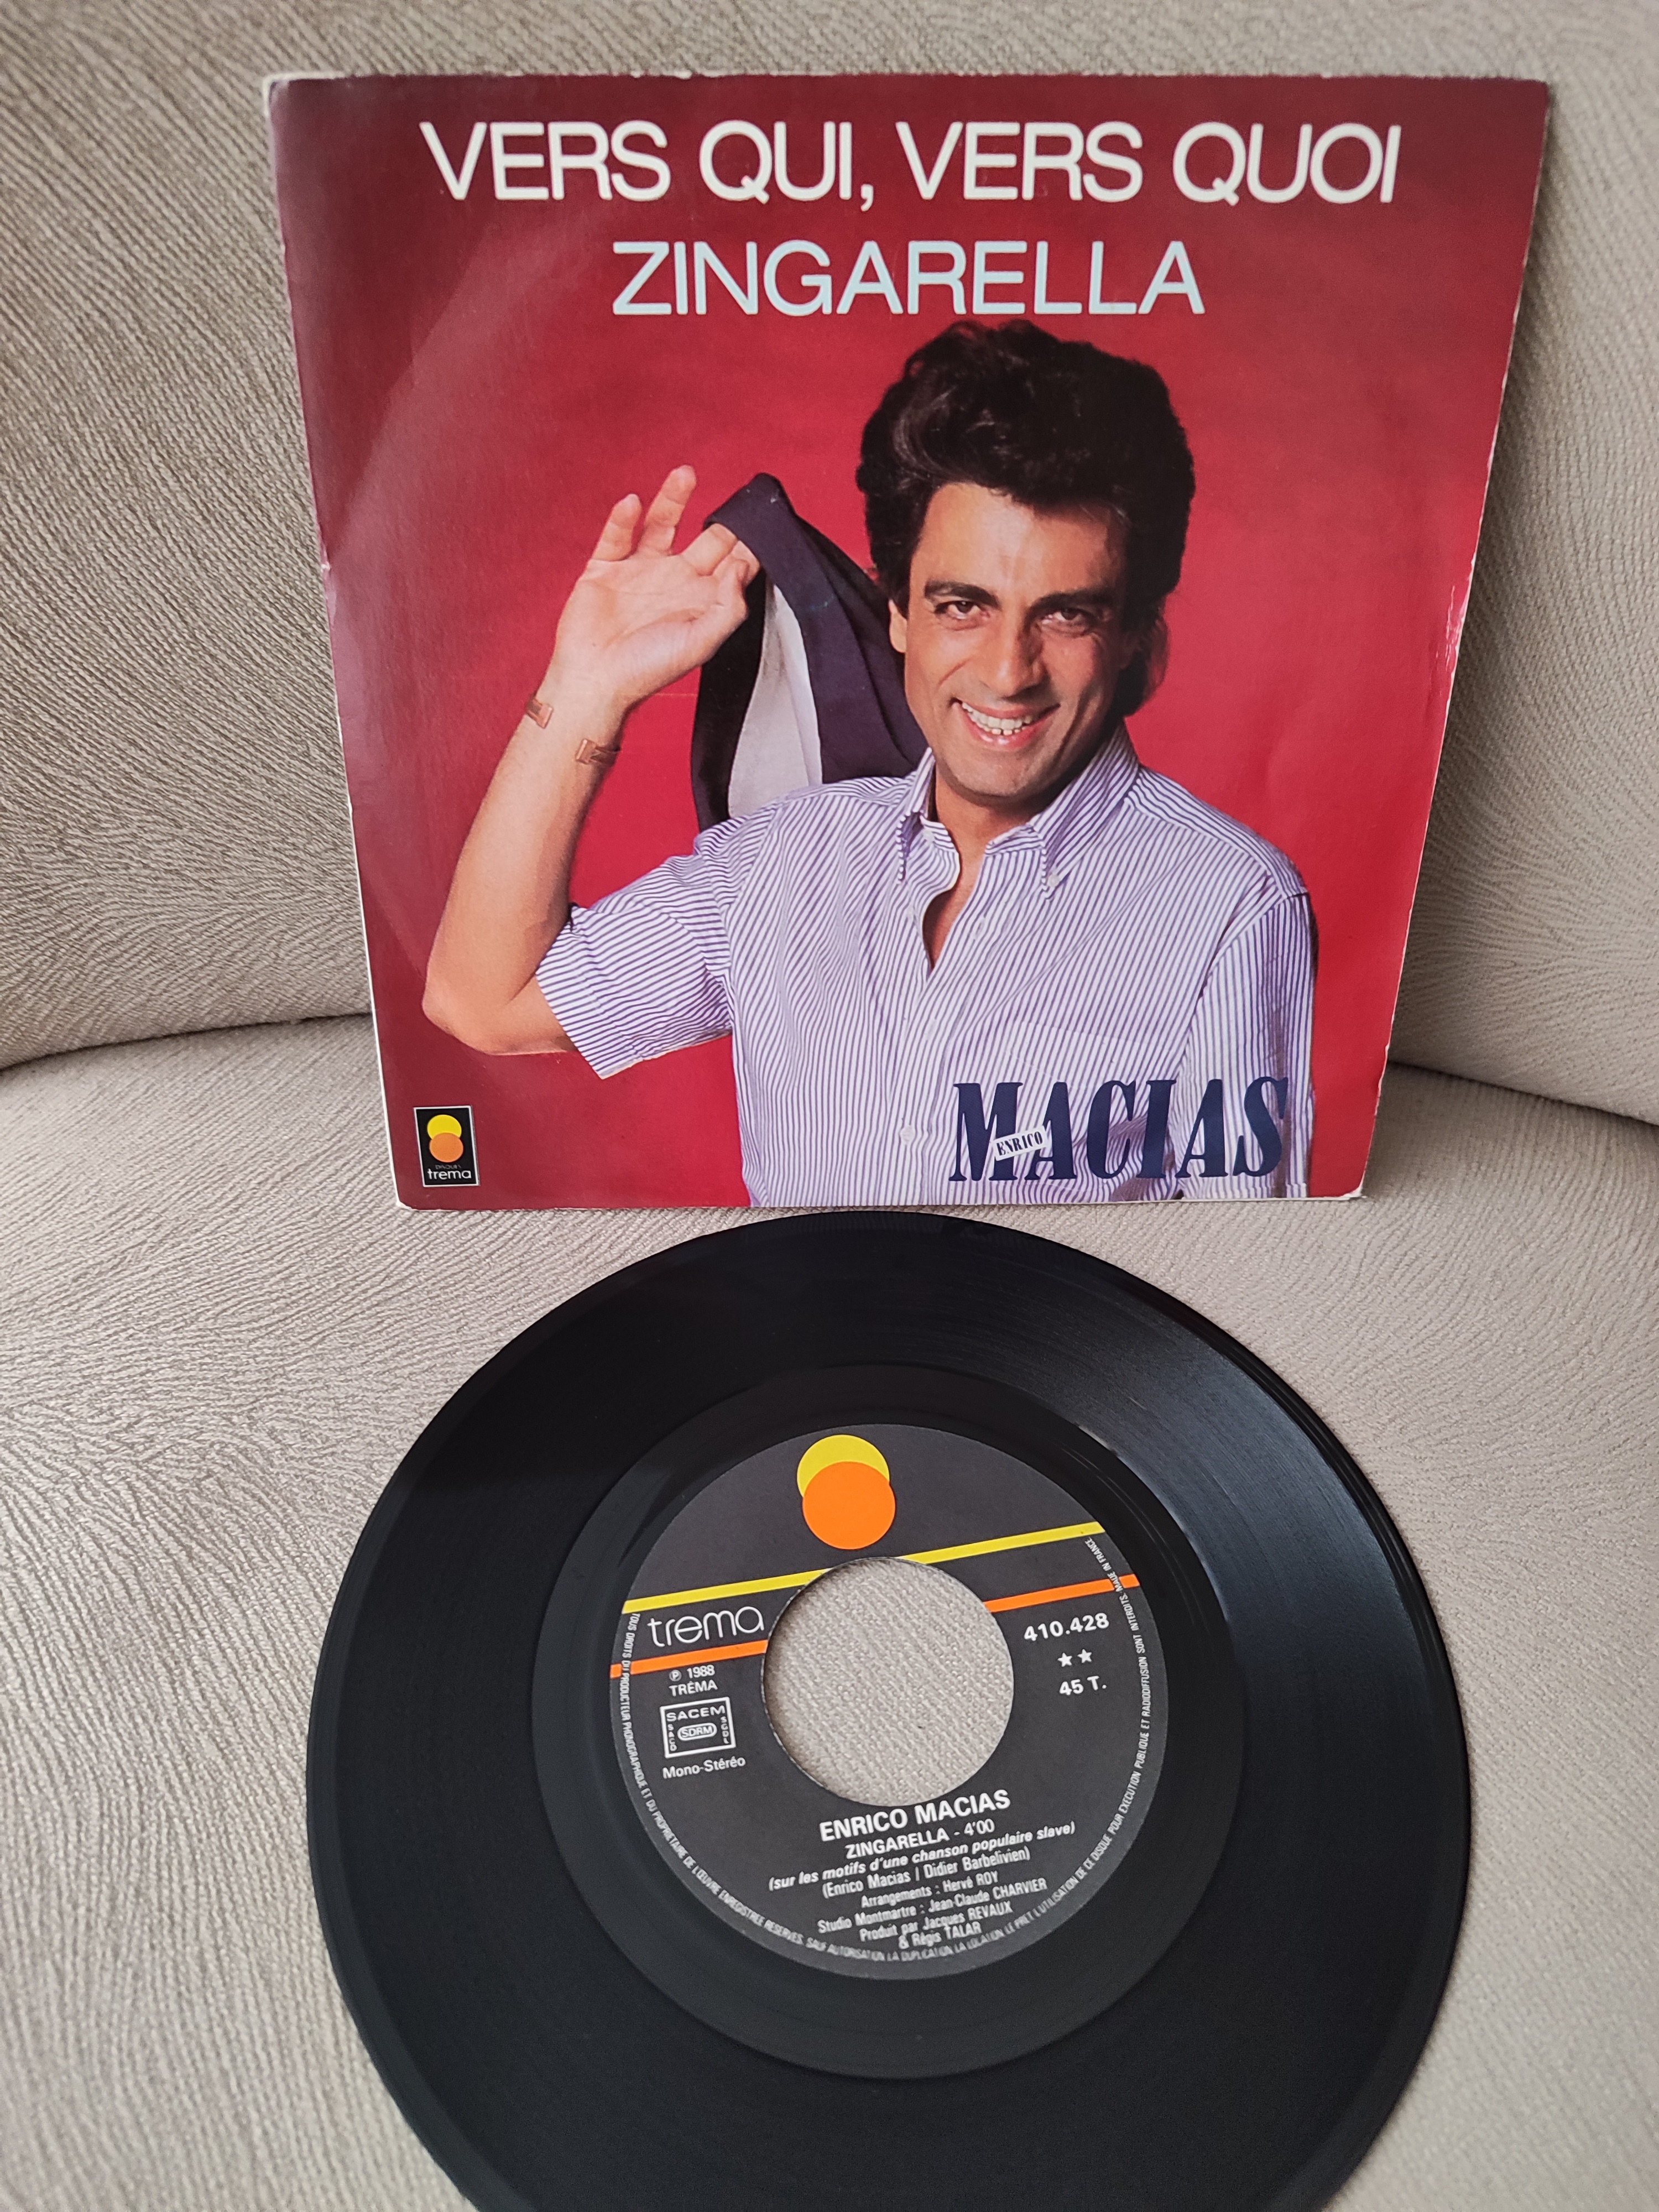 ENRICO MACIAS - Zingarella  - 1988 Fransa Basım 45 LİK PLAK 2. el